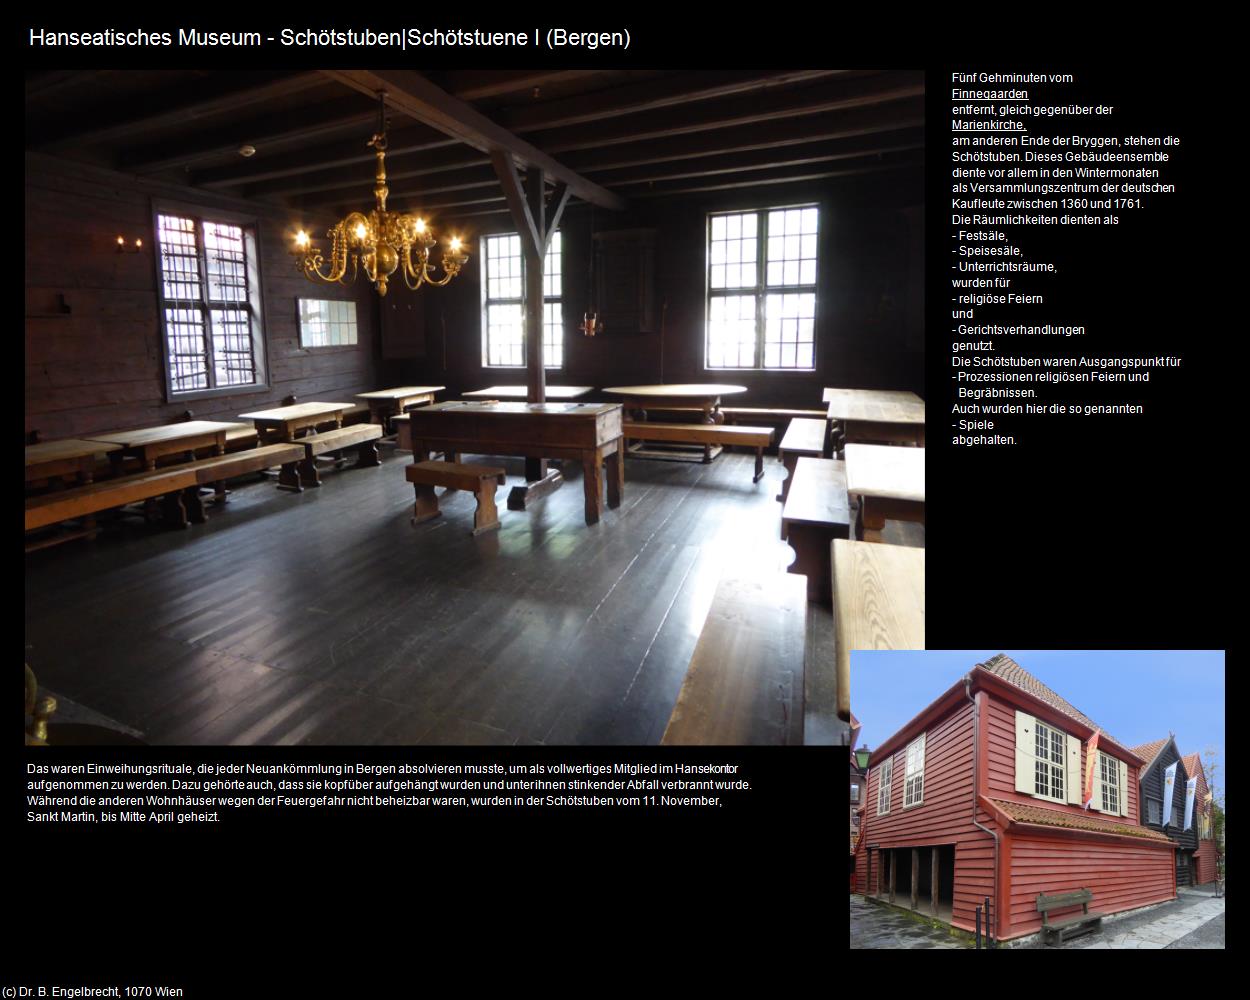 Hanseatisches Museum - Schötstuben I (Bergen) in Kulturatlas-REISE nach NORWEGEN(c)B.Engelbrecht